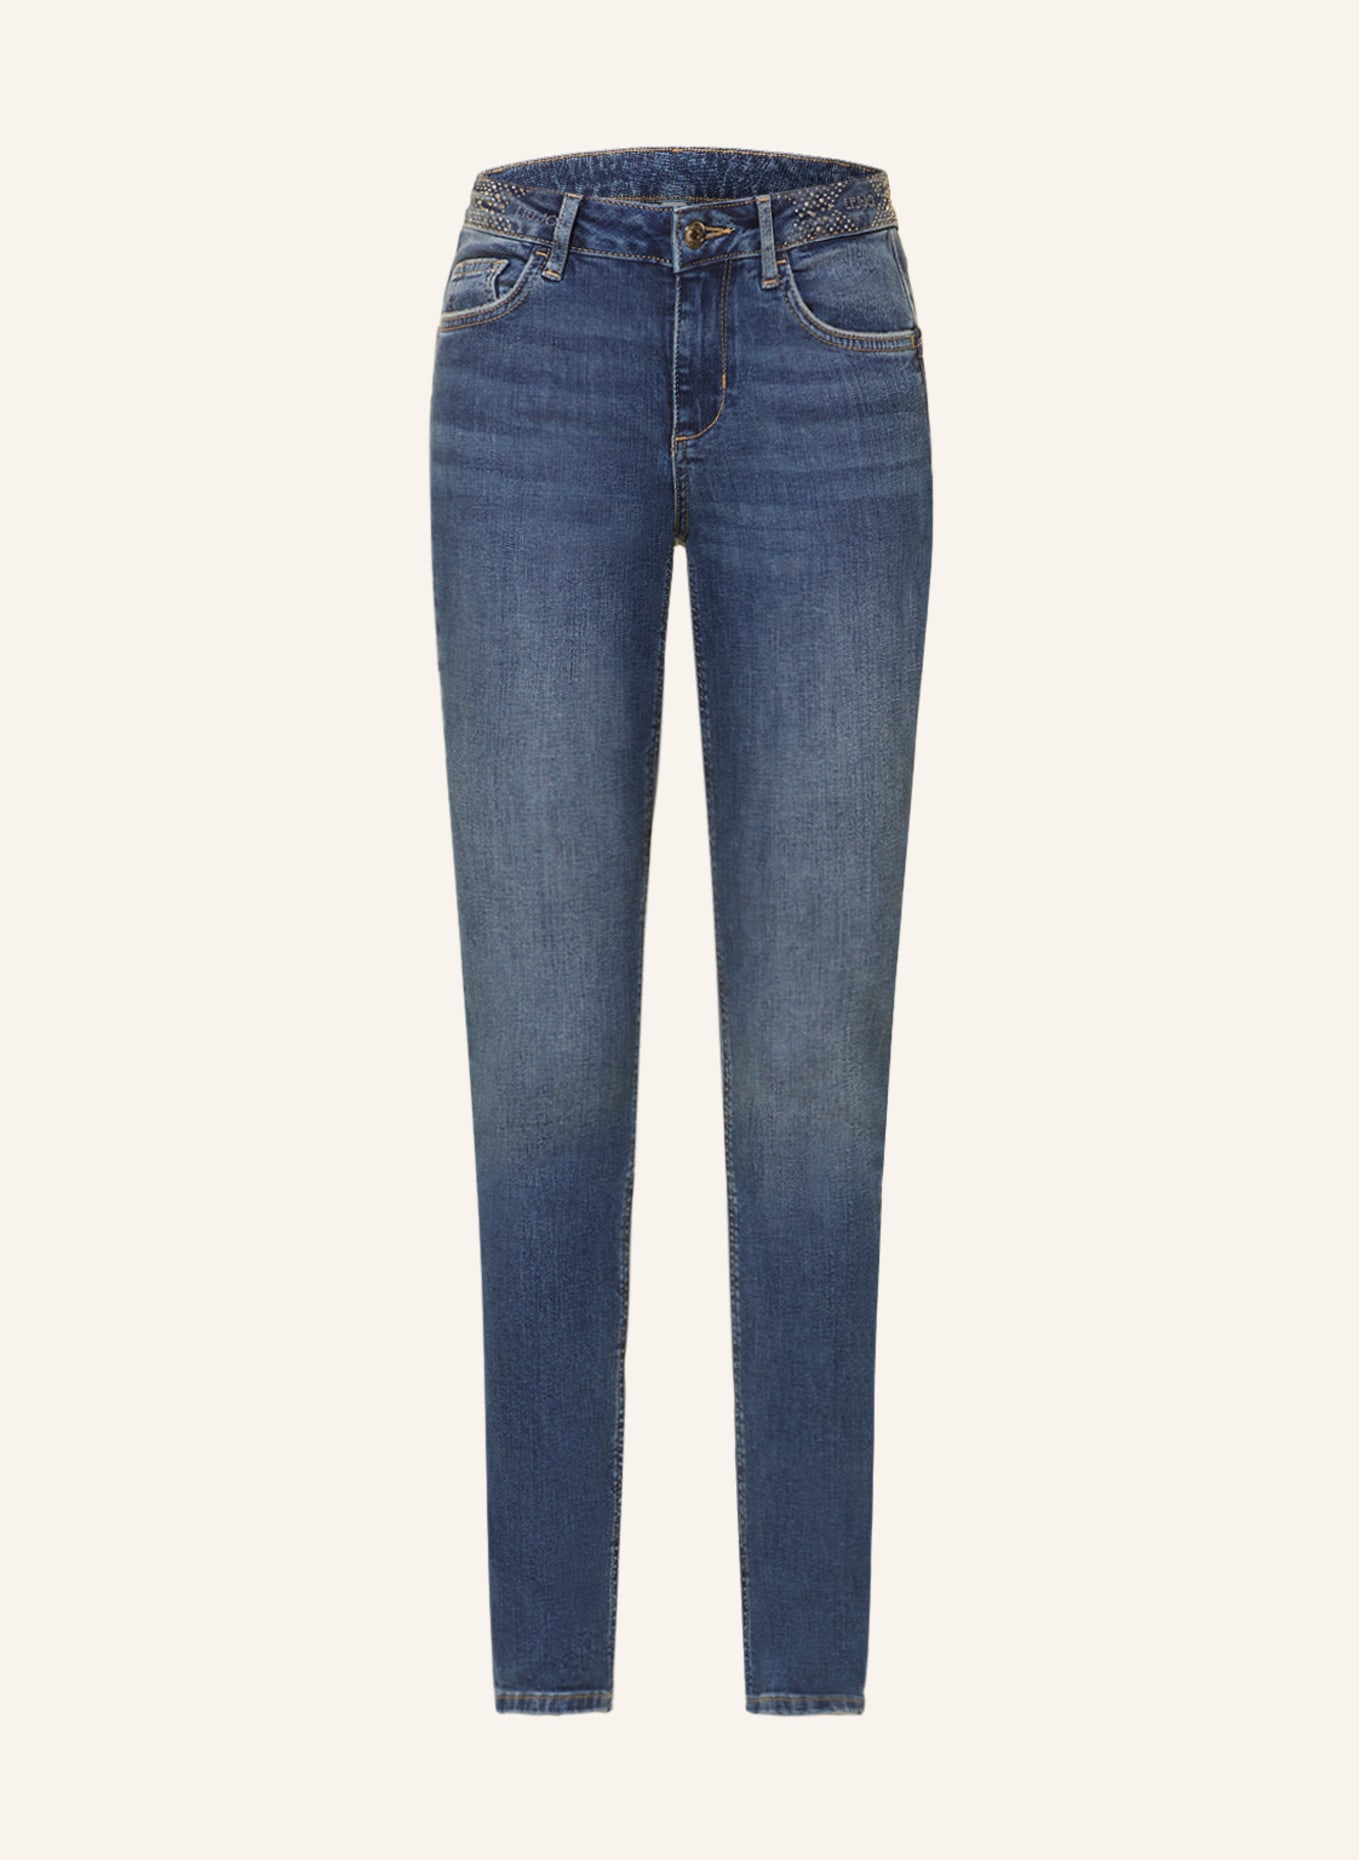 LIU JO Jeans with decorative gems, Color: 78282 Den.Blue dk.seductiv (Image 1)